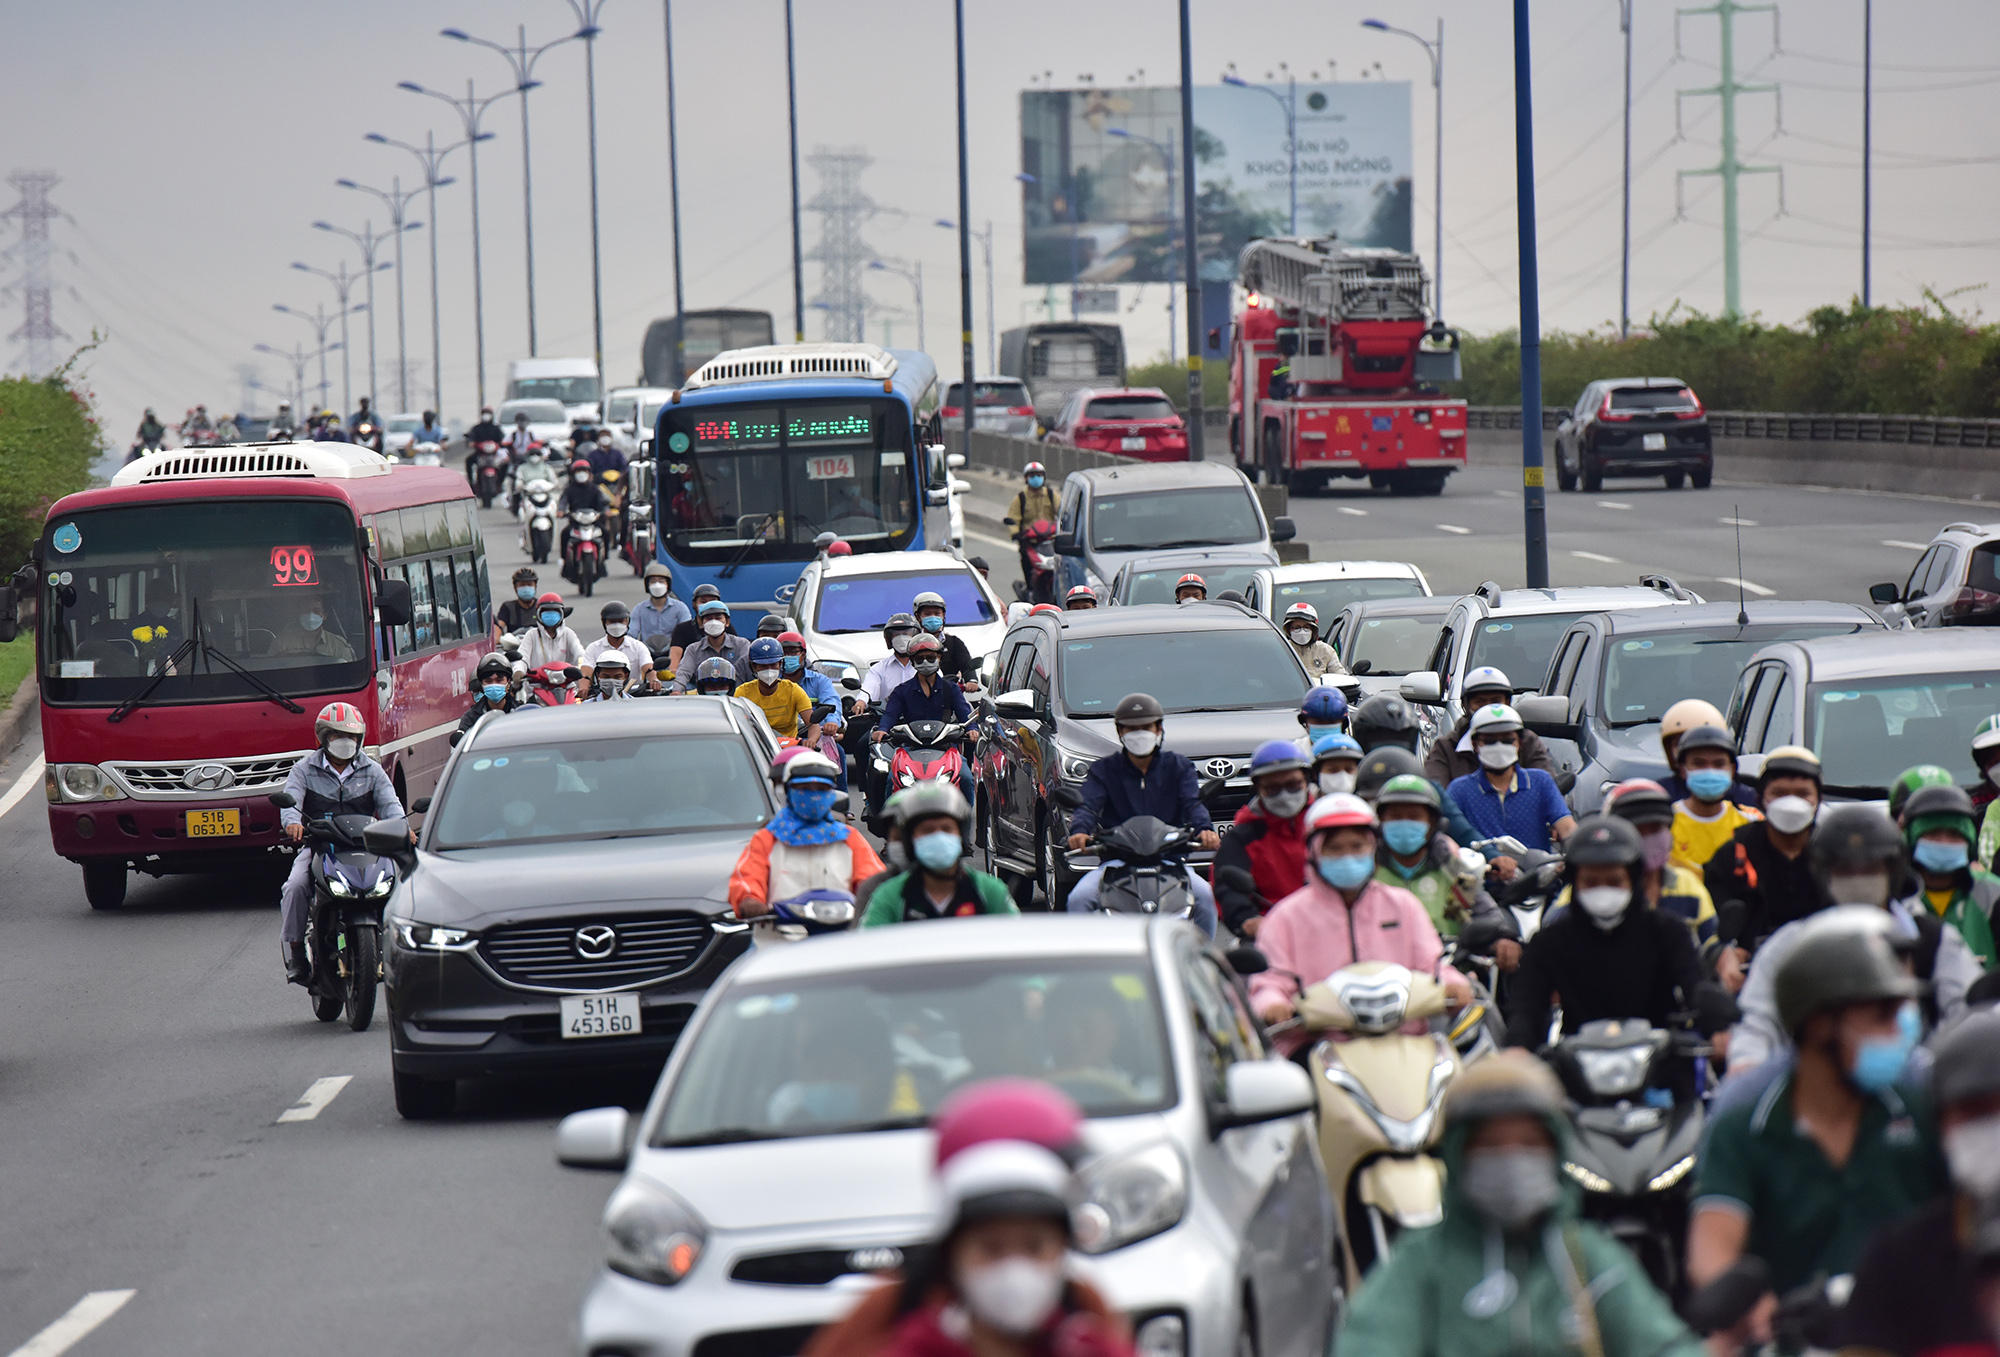 Hà Nội, TP.HCM lại tắc đường kinh hoàng sau nghỉ lễ, người dân chật vật tới nơi làm việc - 34